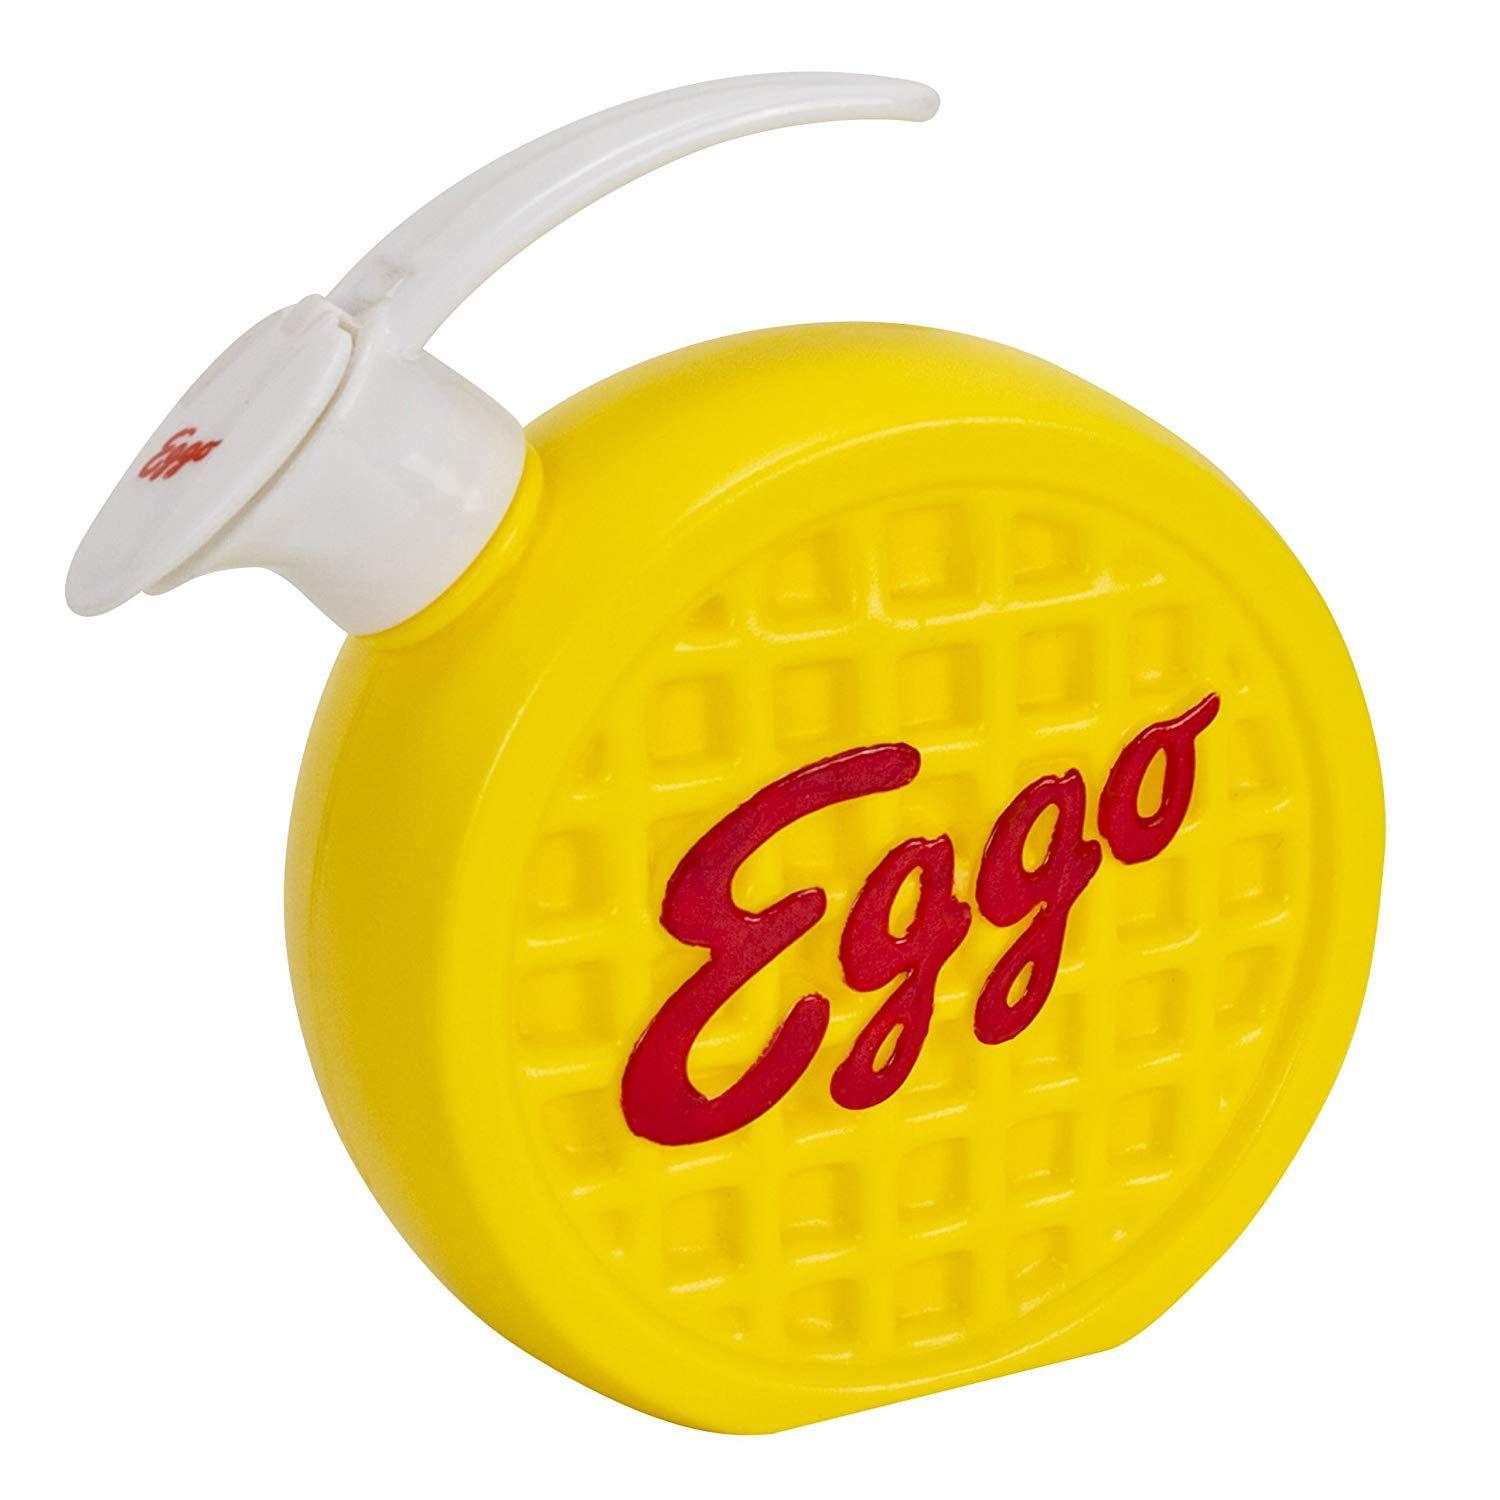 Eggo Logo - Amazon.com: Evriholder 84100 Kellogg's Eggo Warm and Pour: Home ...